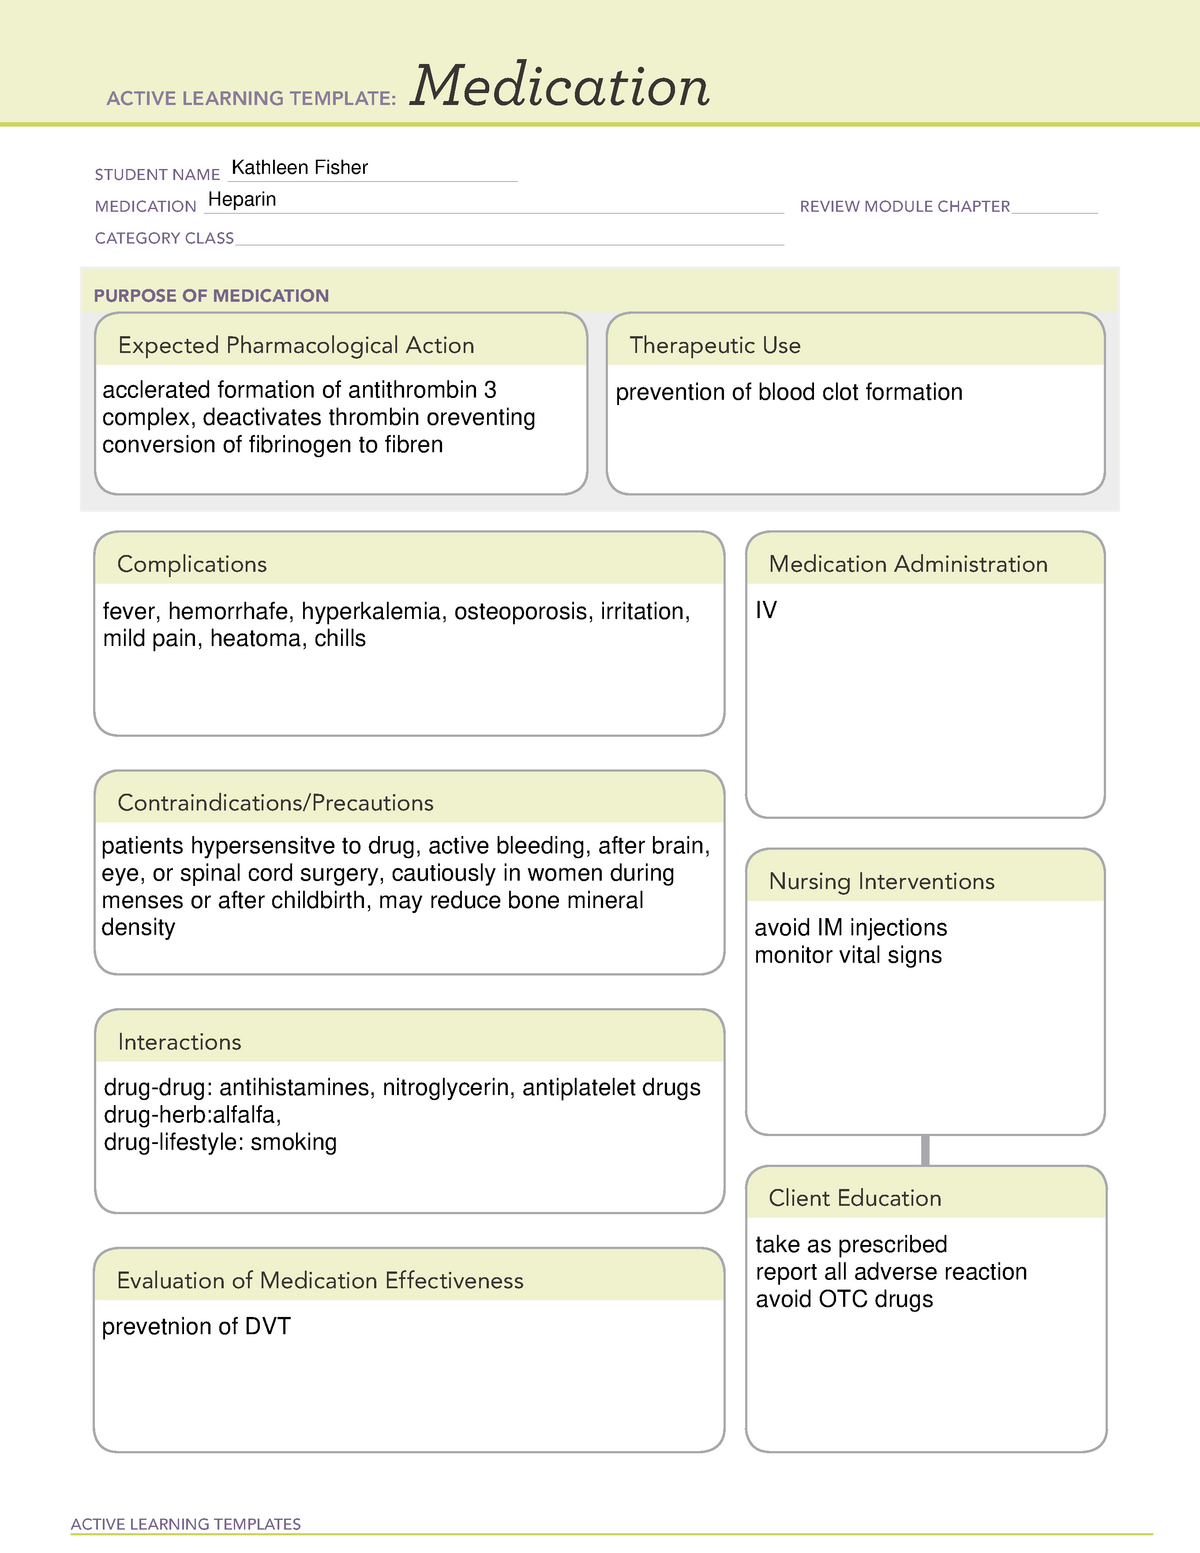 ati-medication-template-heparin